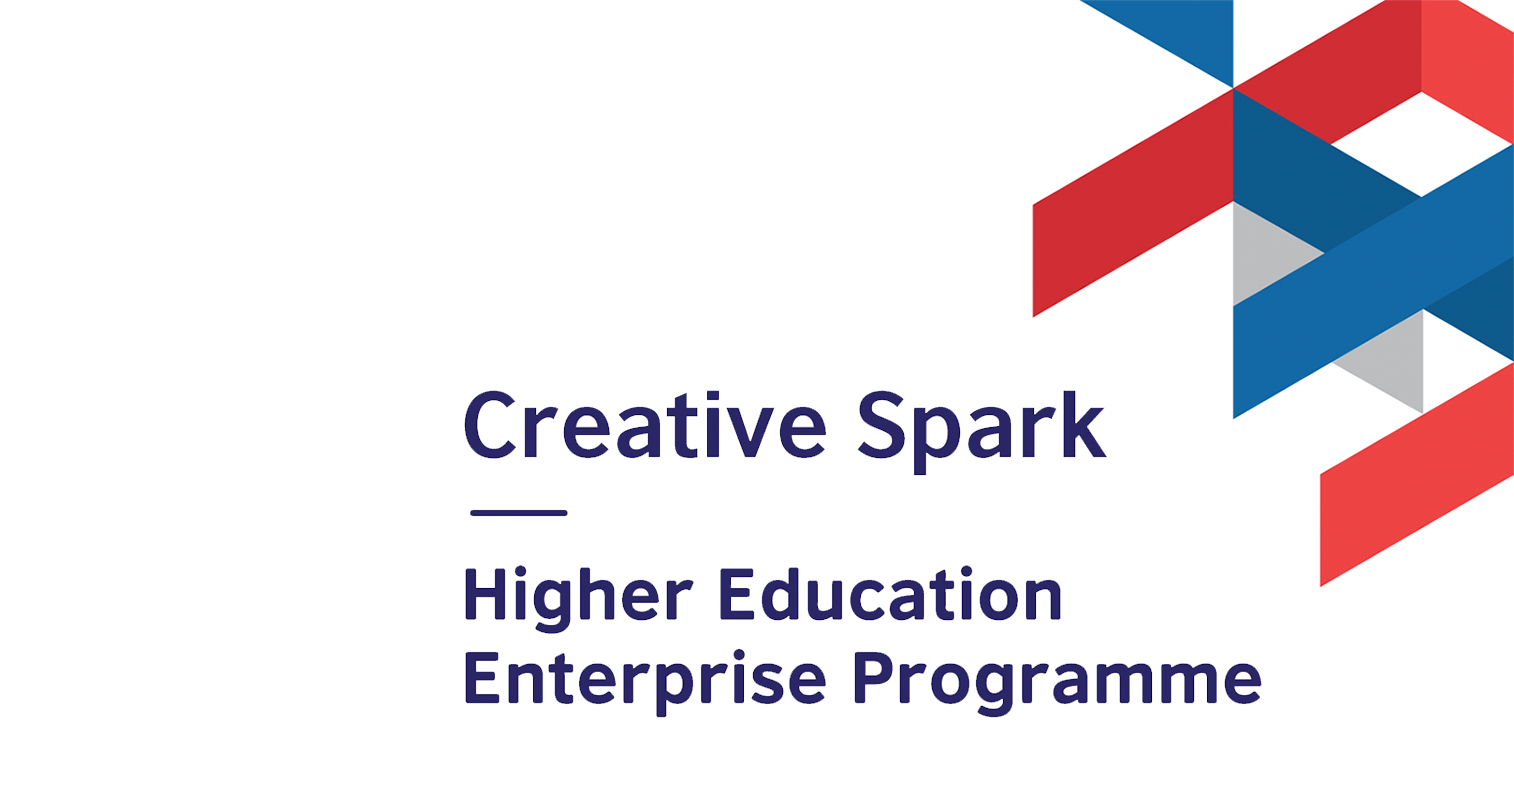 APPLY NOW! Creating Enterprise: Business Start-Up Journey - Entrepreneurship Skills Course